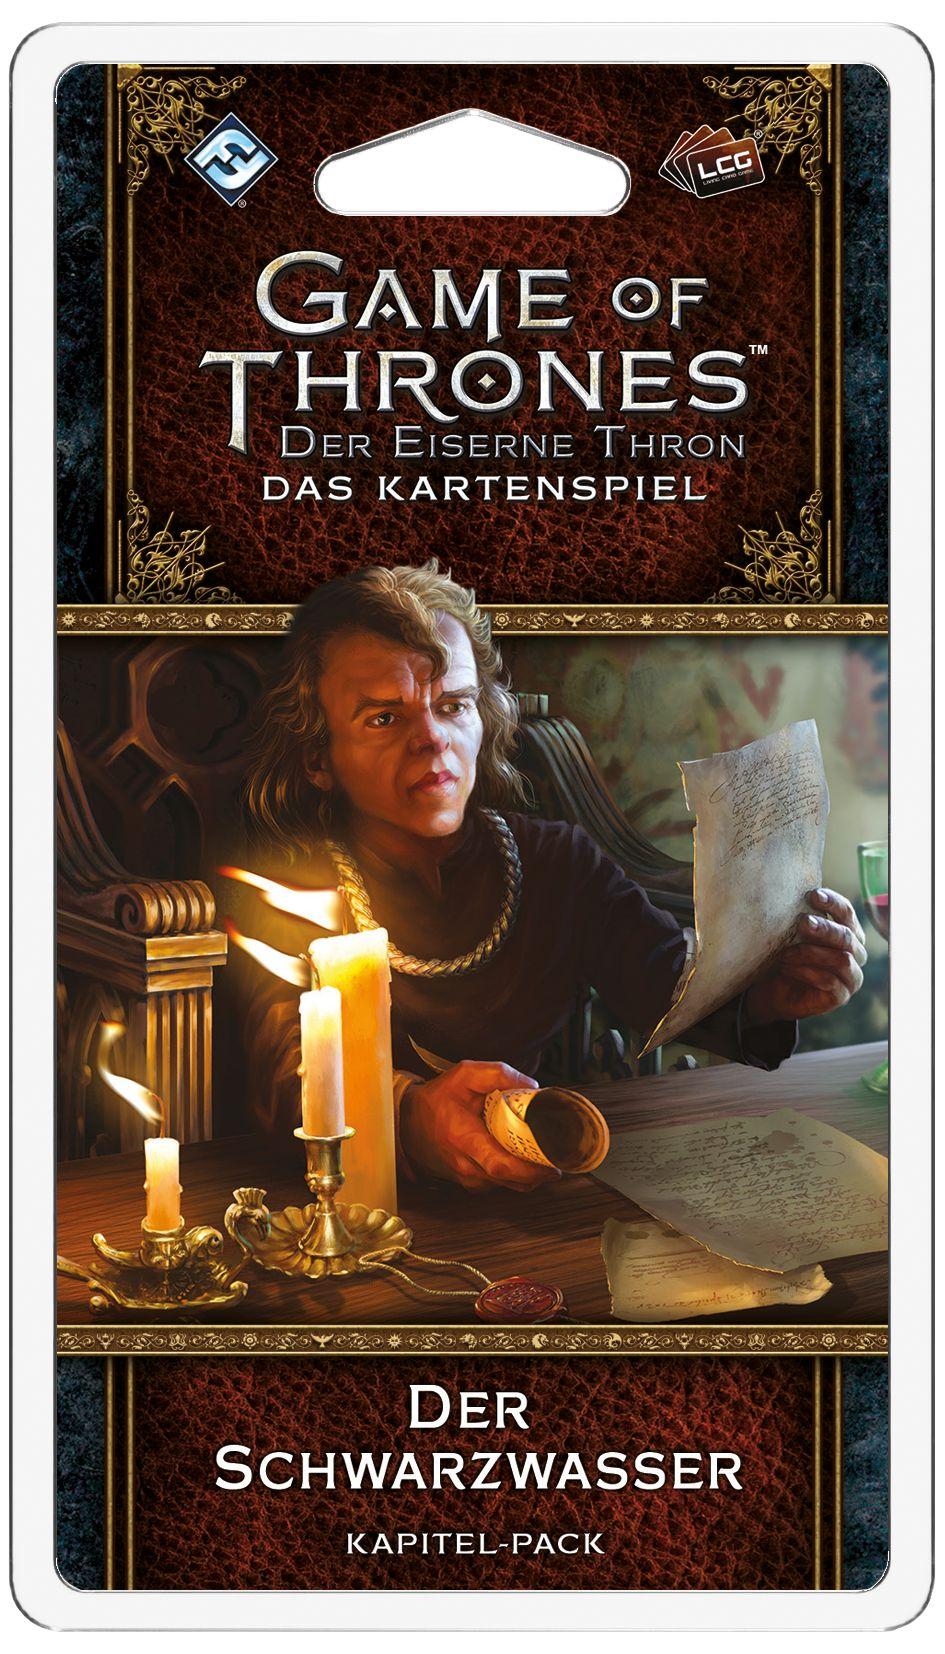 Game of Thrones Kartenspiel: Der Eiserne Thron - 2. Edition - Der Schwarzwasser - Kapitel-Pack (Königsmund 5)